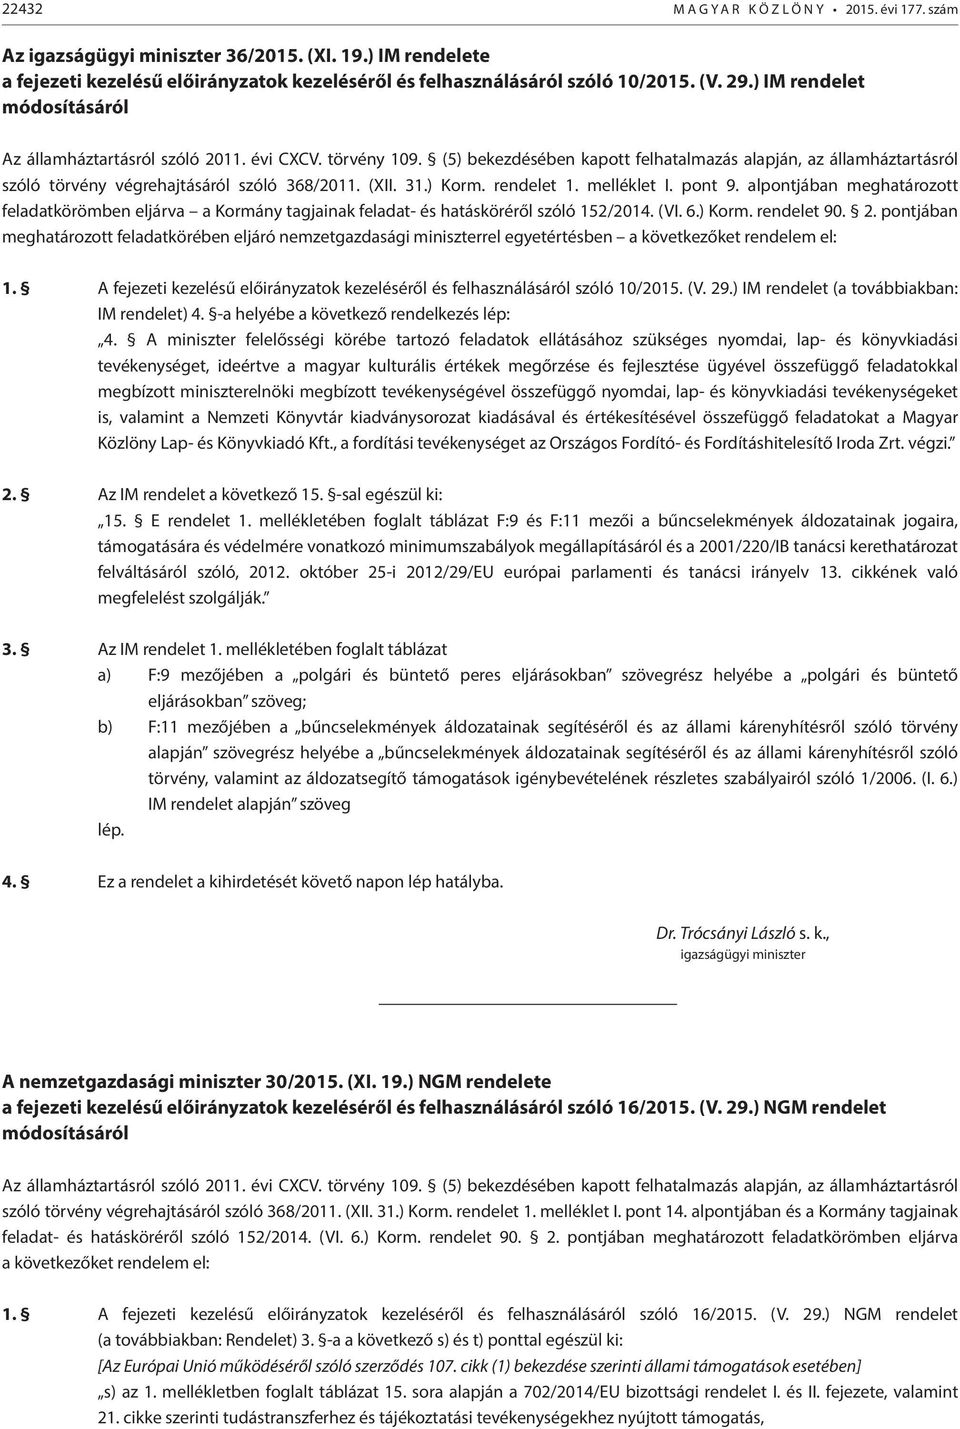 (XII. 31.) Korm. rendelet 1. melléklet I. pont 9. alpontjában meghatározott feladatkörömben eljárva a Kormány tagjainak feladat- és hatásköréről szóló 152/2014. (VI. 6.) Korm. rendelet 90. 2.